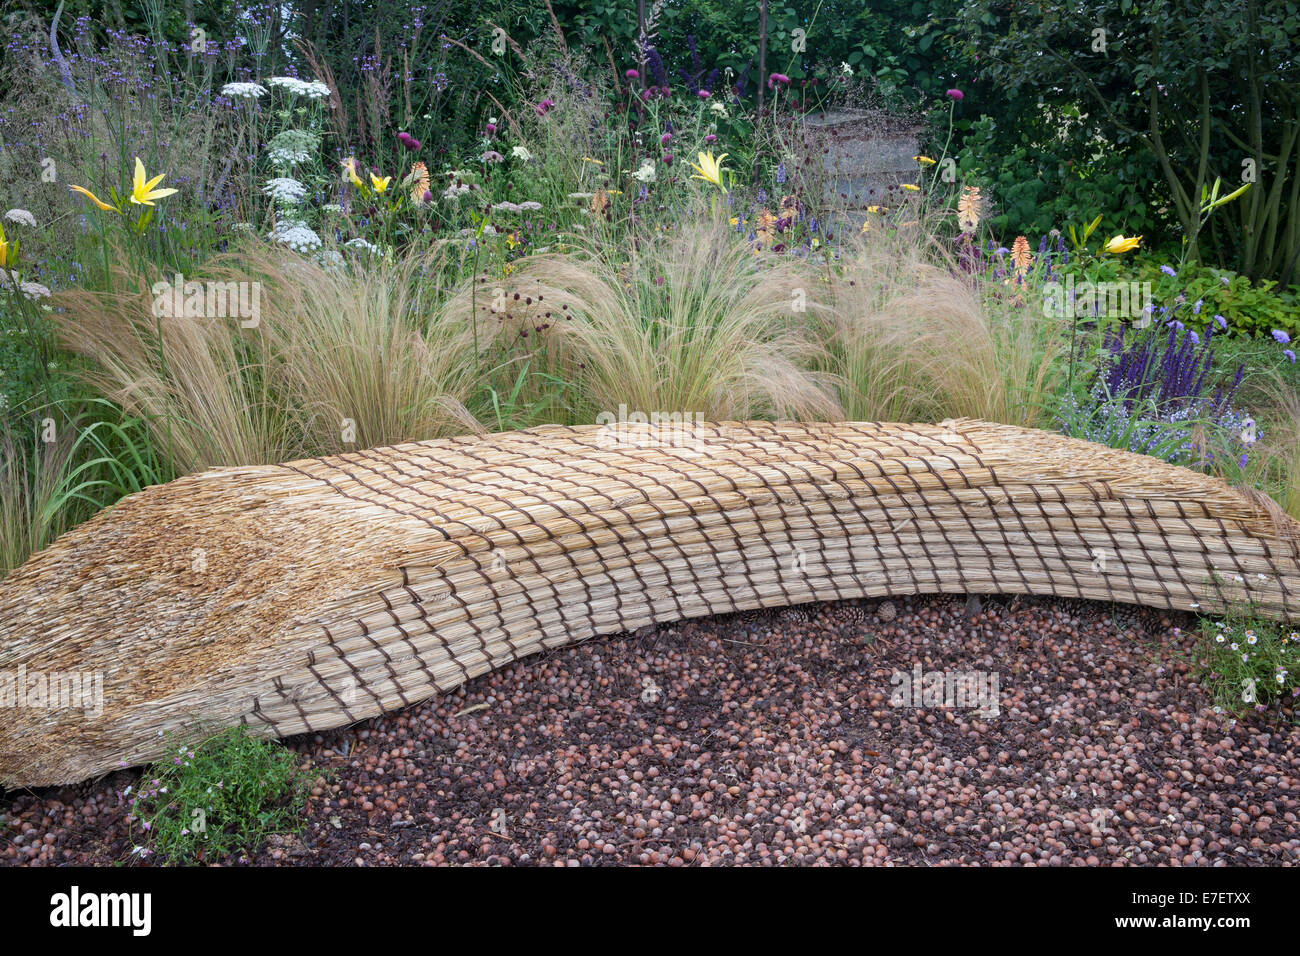 Blick auf den Garten - Jordans Wildlife Garden - der Garten Sitzbank aus Stroh Stroh mit Mulch von Haselnüssen hergestellt- Stockfoto